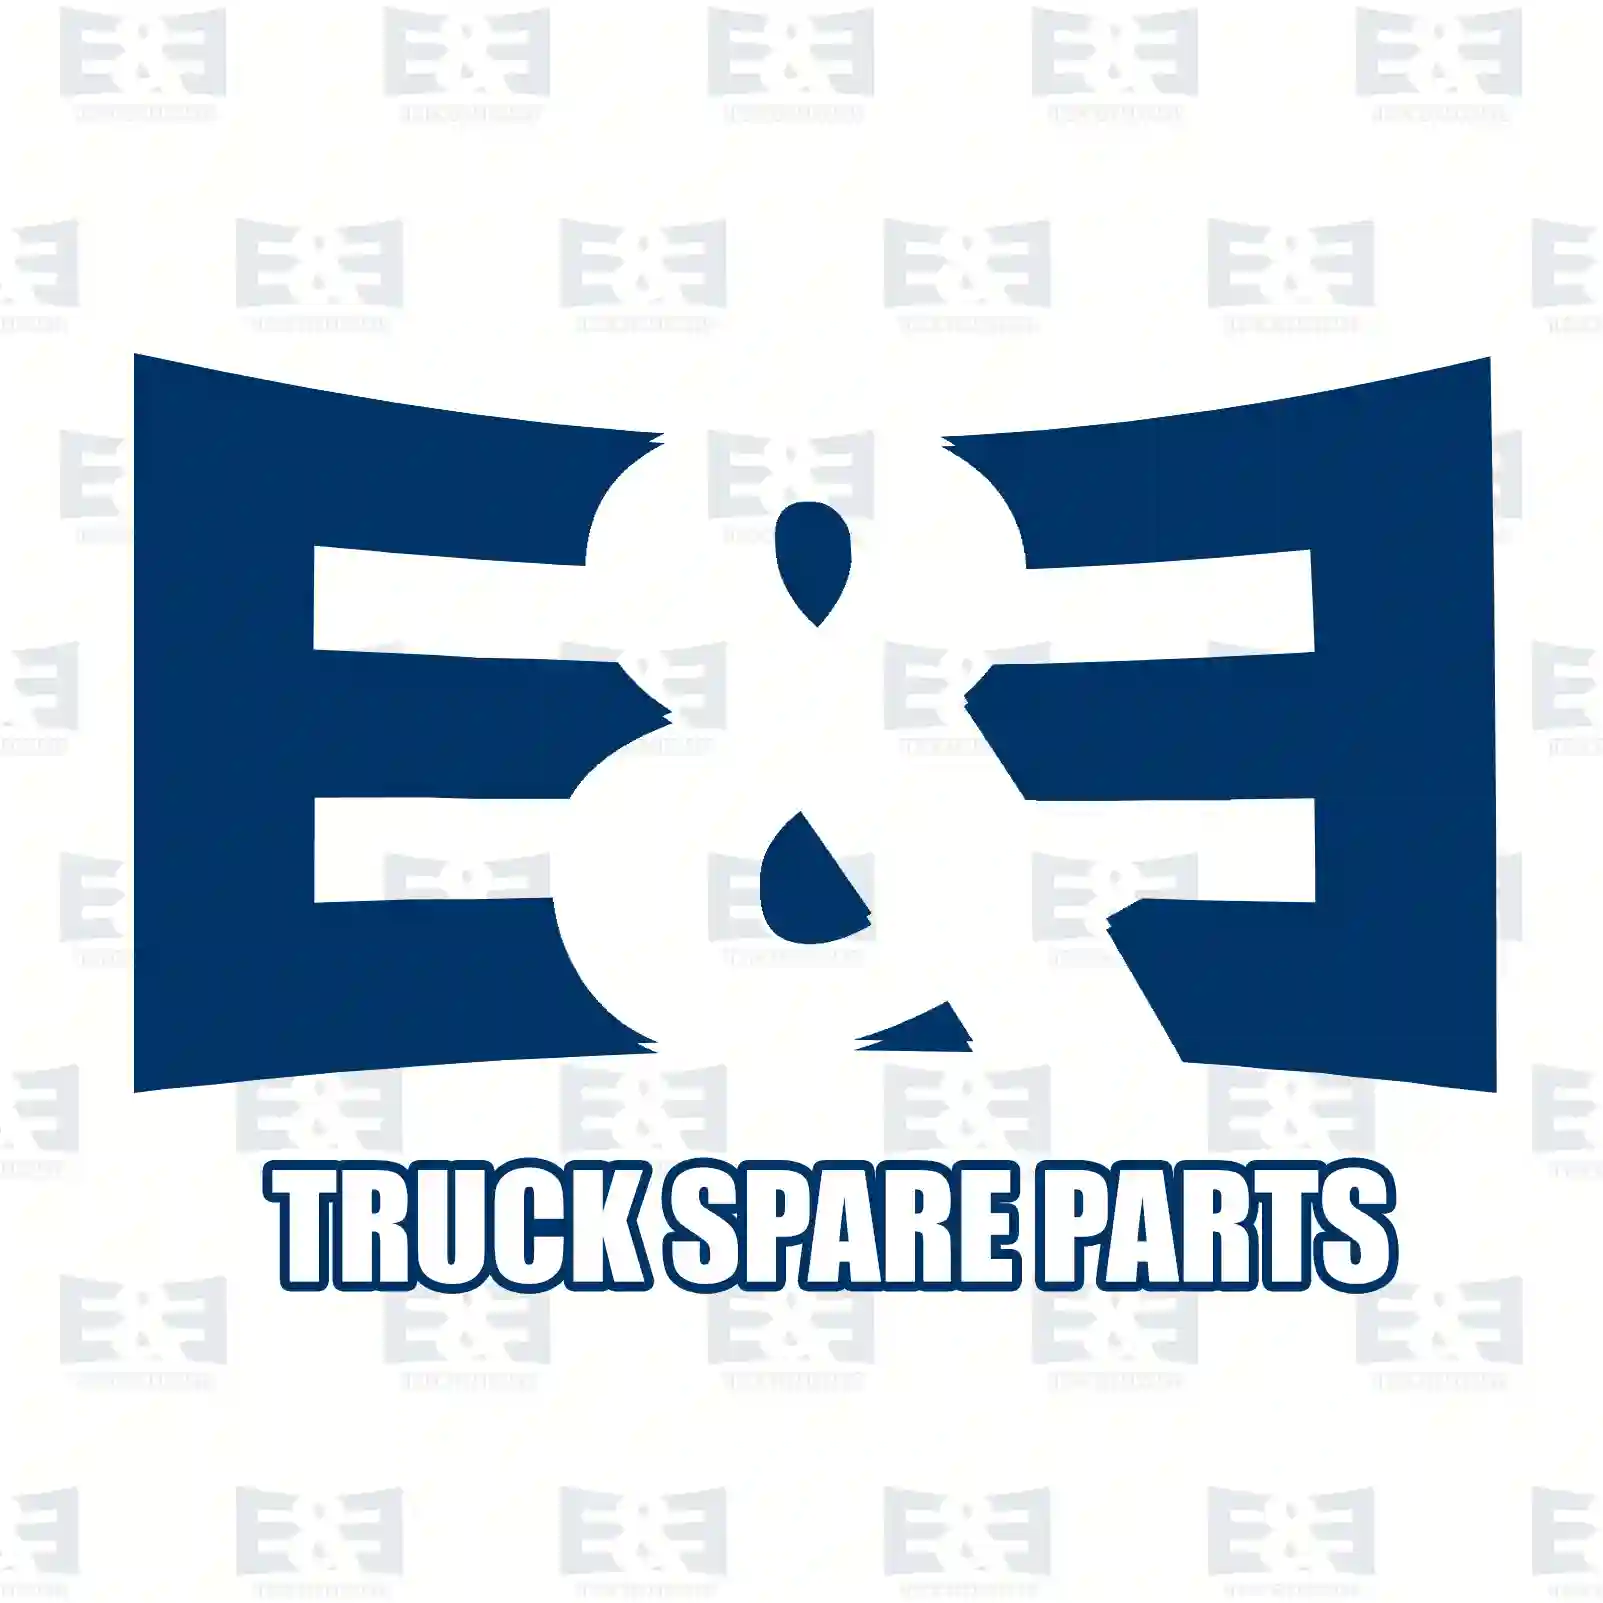 Propeller shaft, 2E2276907, 81393026060, 81393026062, 81393246060 ||  2E2276907 E&E Truck Spare Parts | Truck Spare Parts, Auotomotive Spare Parts Propeller shaft, 2E2276907, 81393026060, 81393026062, 81393246060 ||  2E2276907 E&E Truck Spare Parts | Truck Spare Parts, Auotomotive Spare Parts